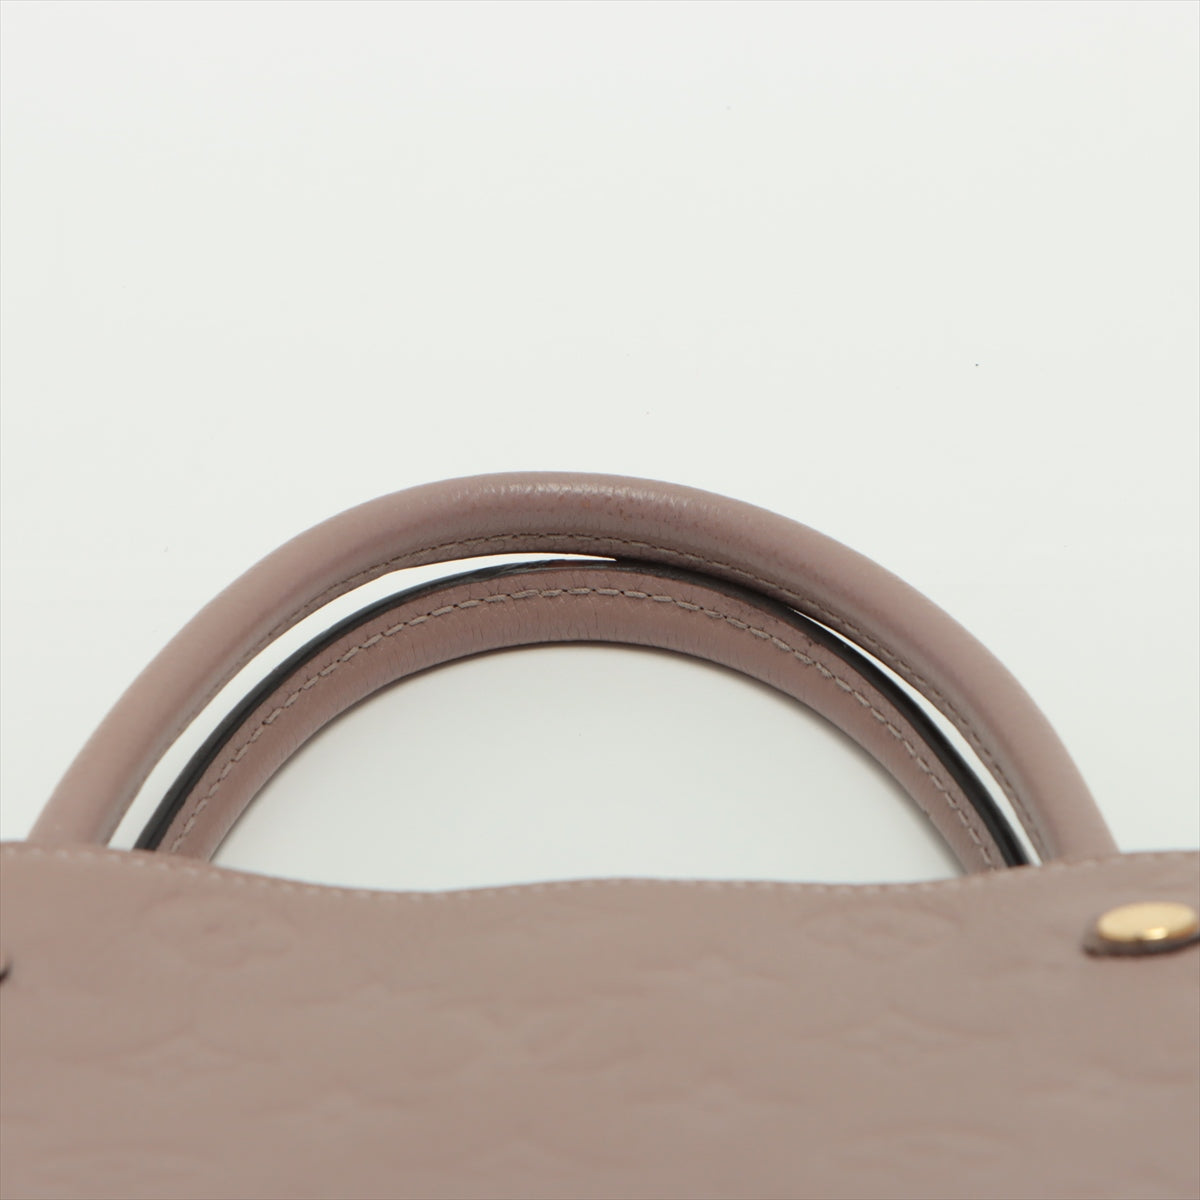 Louis Vuitton Beige Rose Monogram Empreinte Leather Montaigne MM